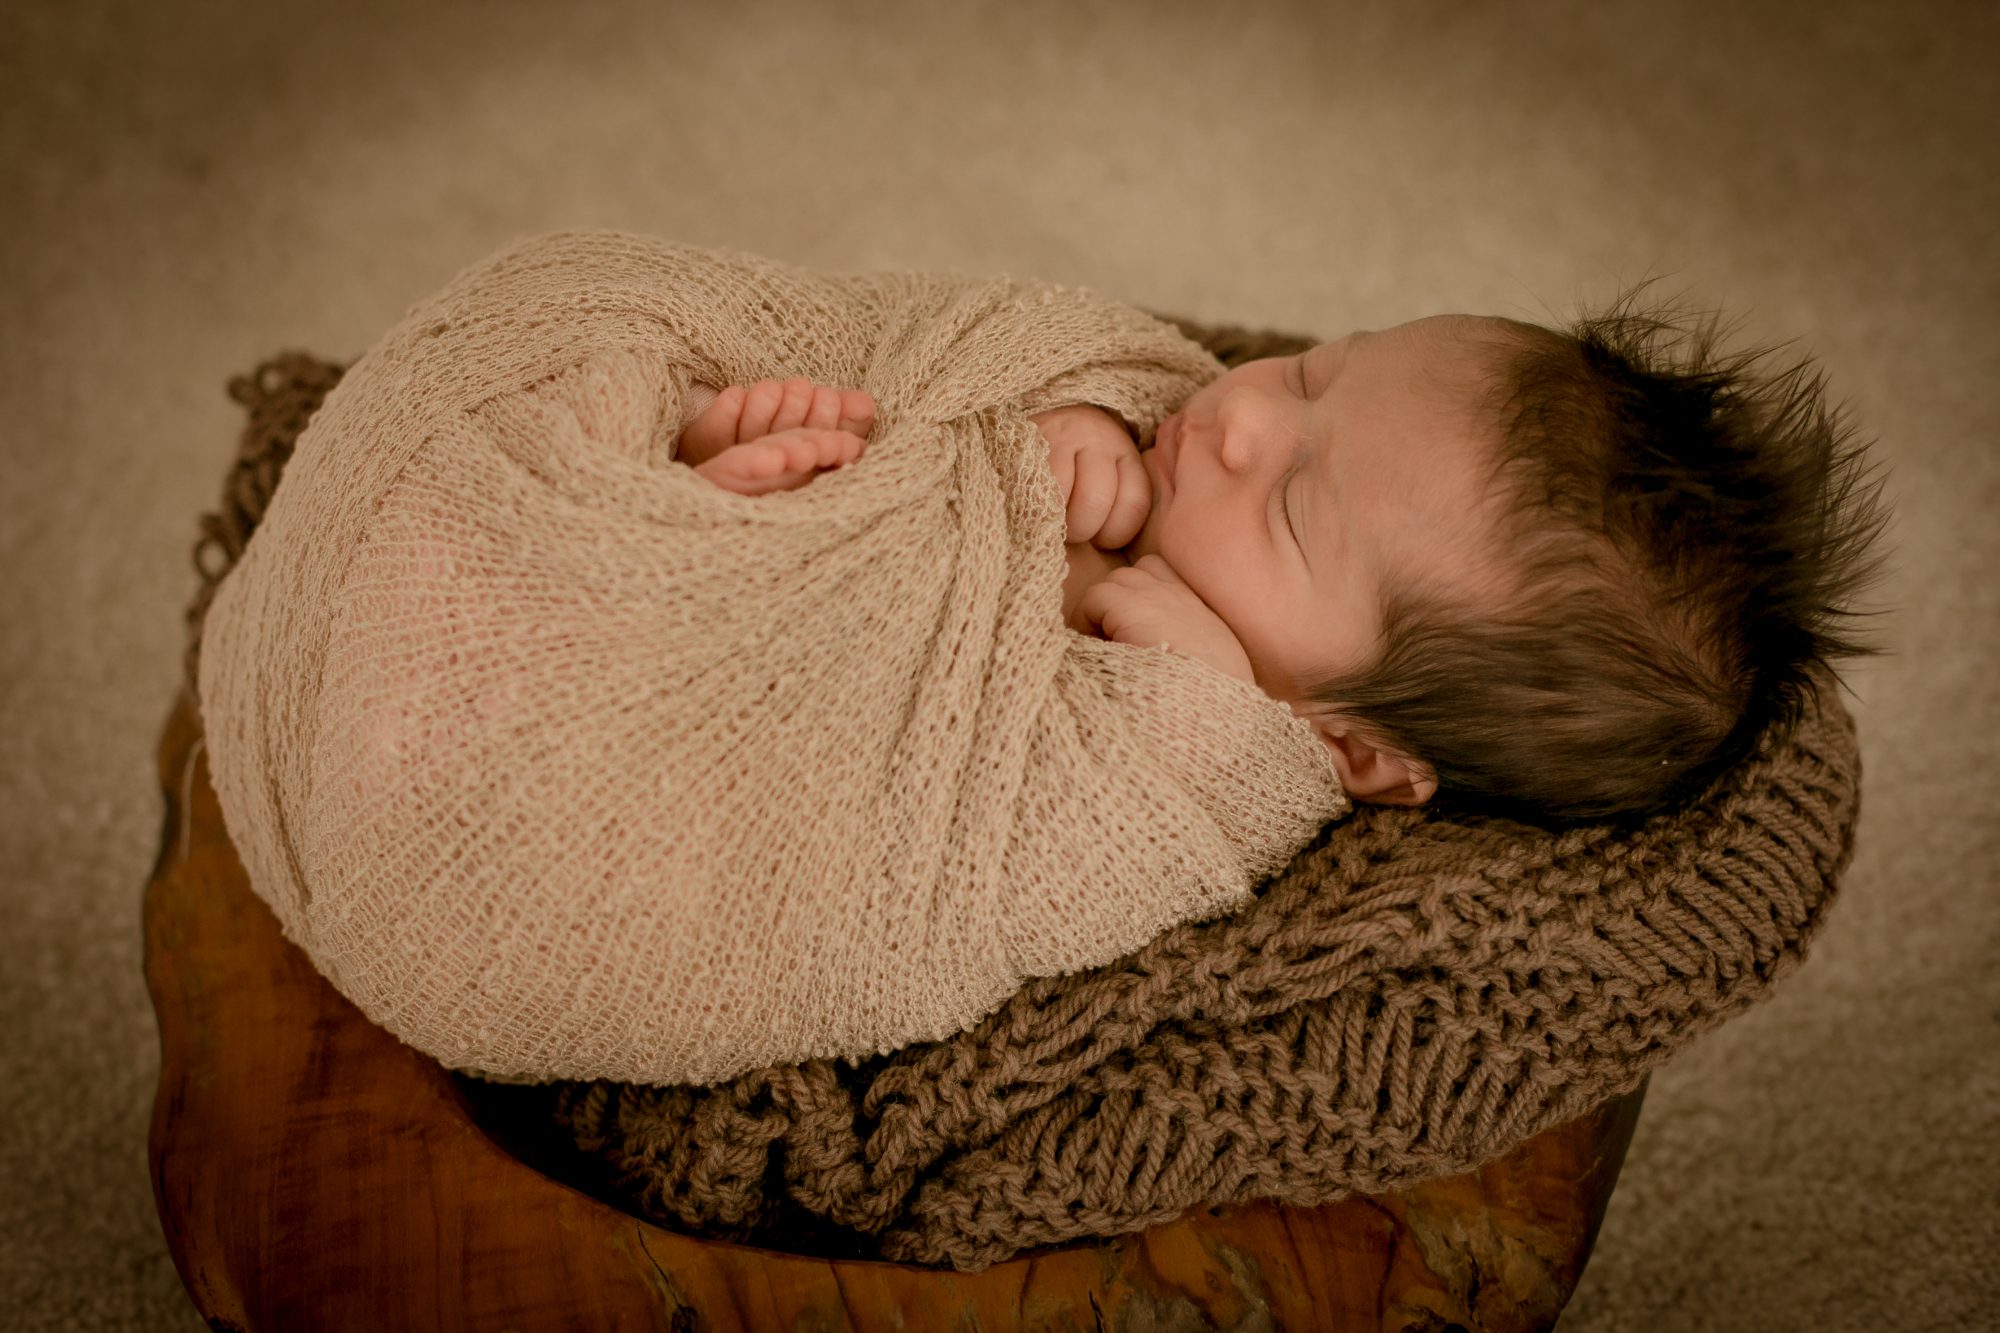 baby fotoshooting newborn fotostudio bilifotos.ch luzern baby foto zeigt wie baby liegt im koerbchen